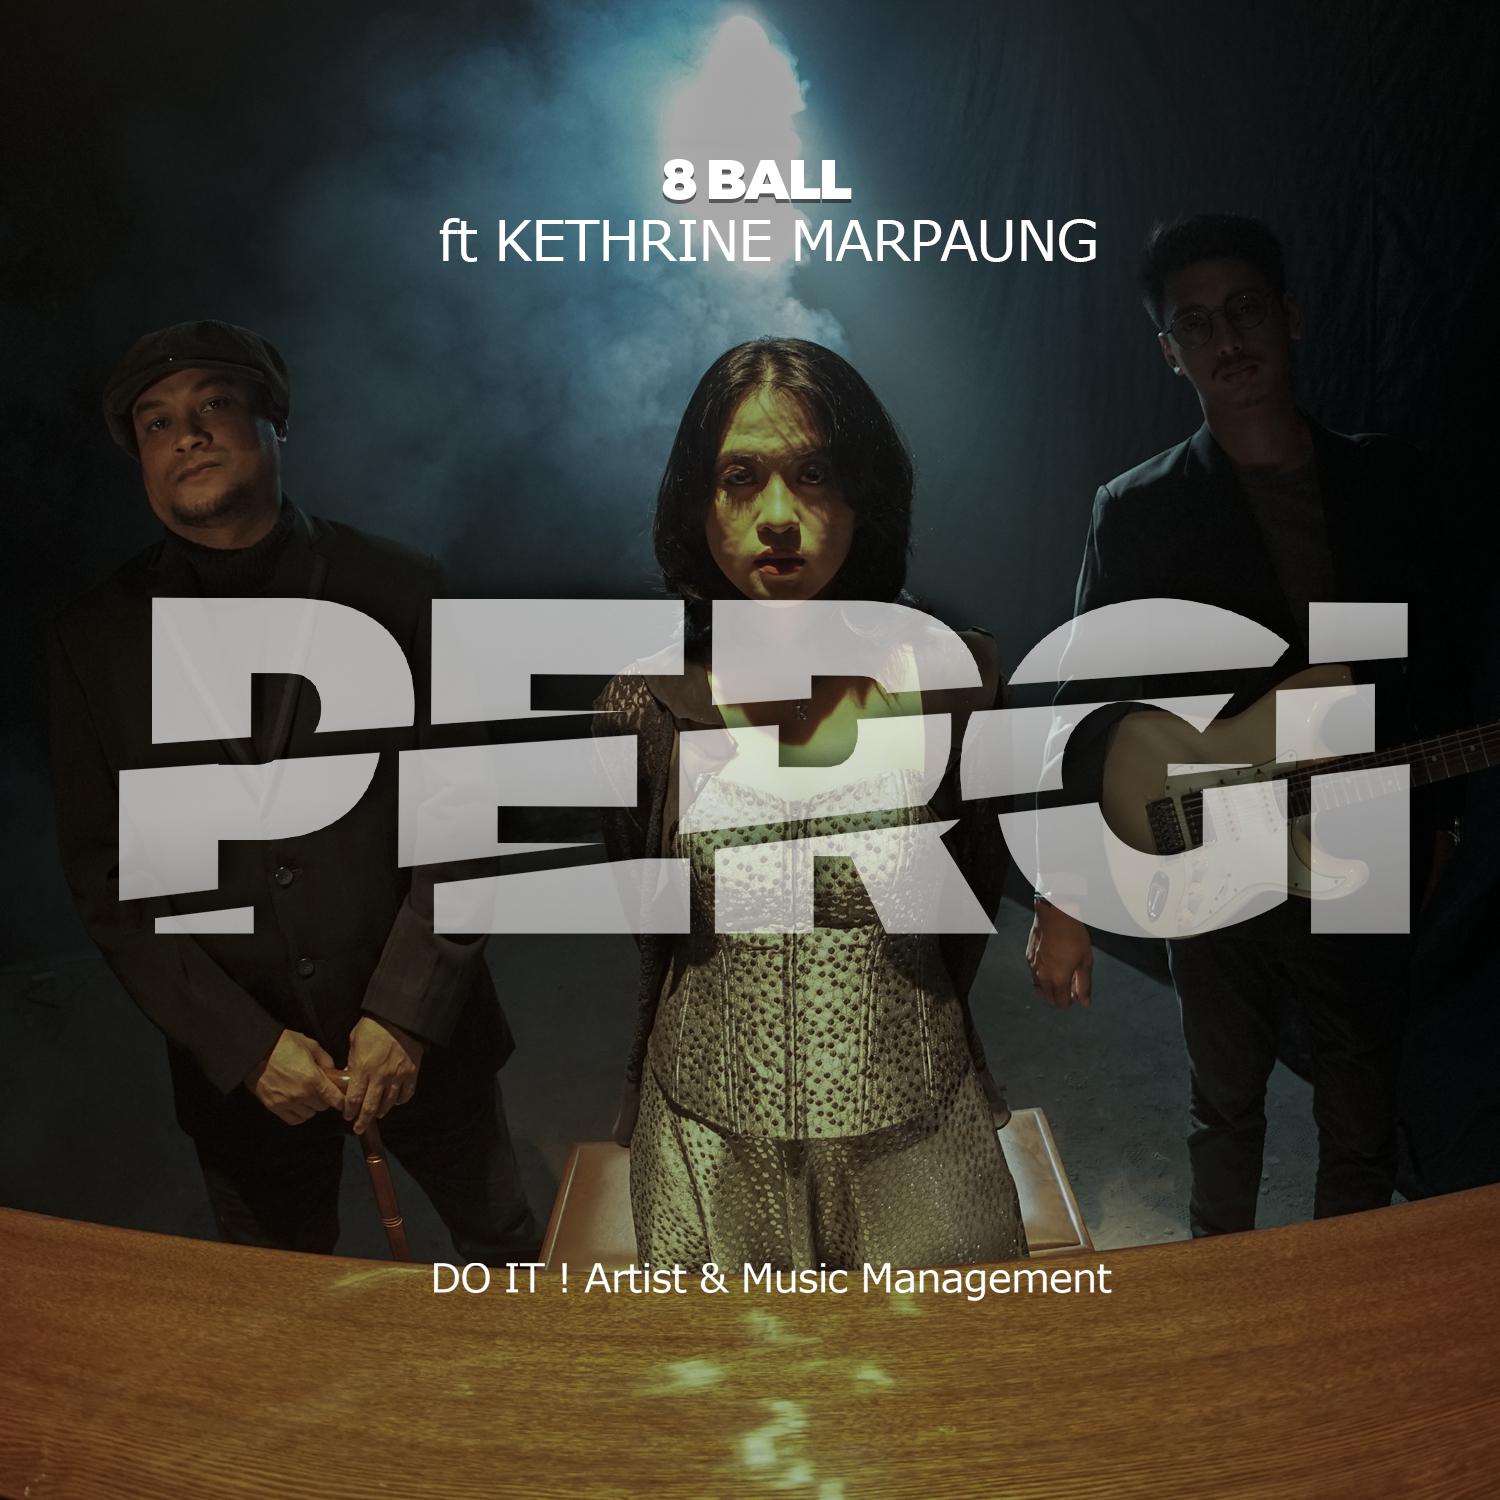 Постер альбома Pergi